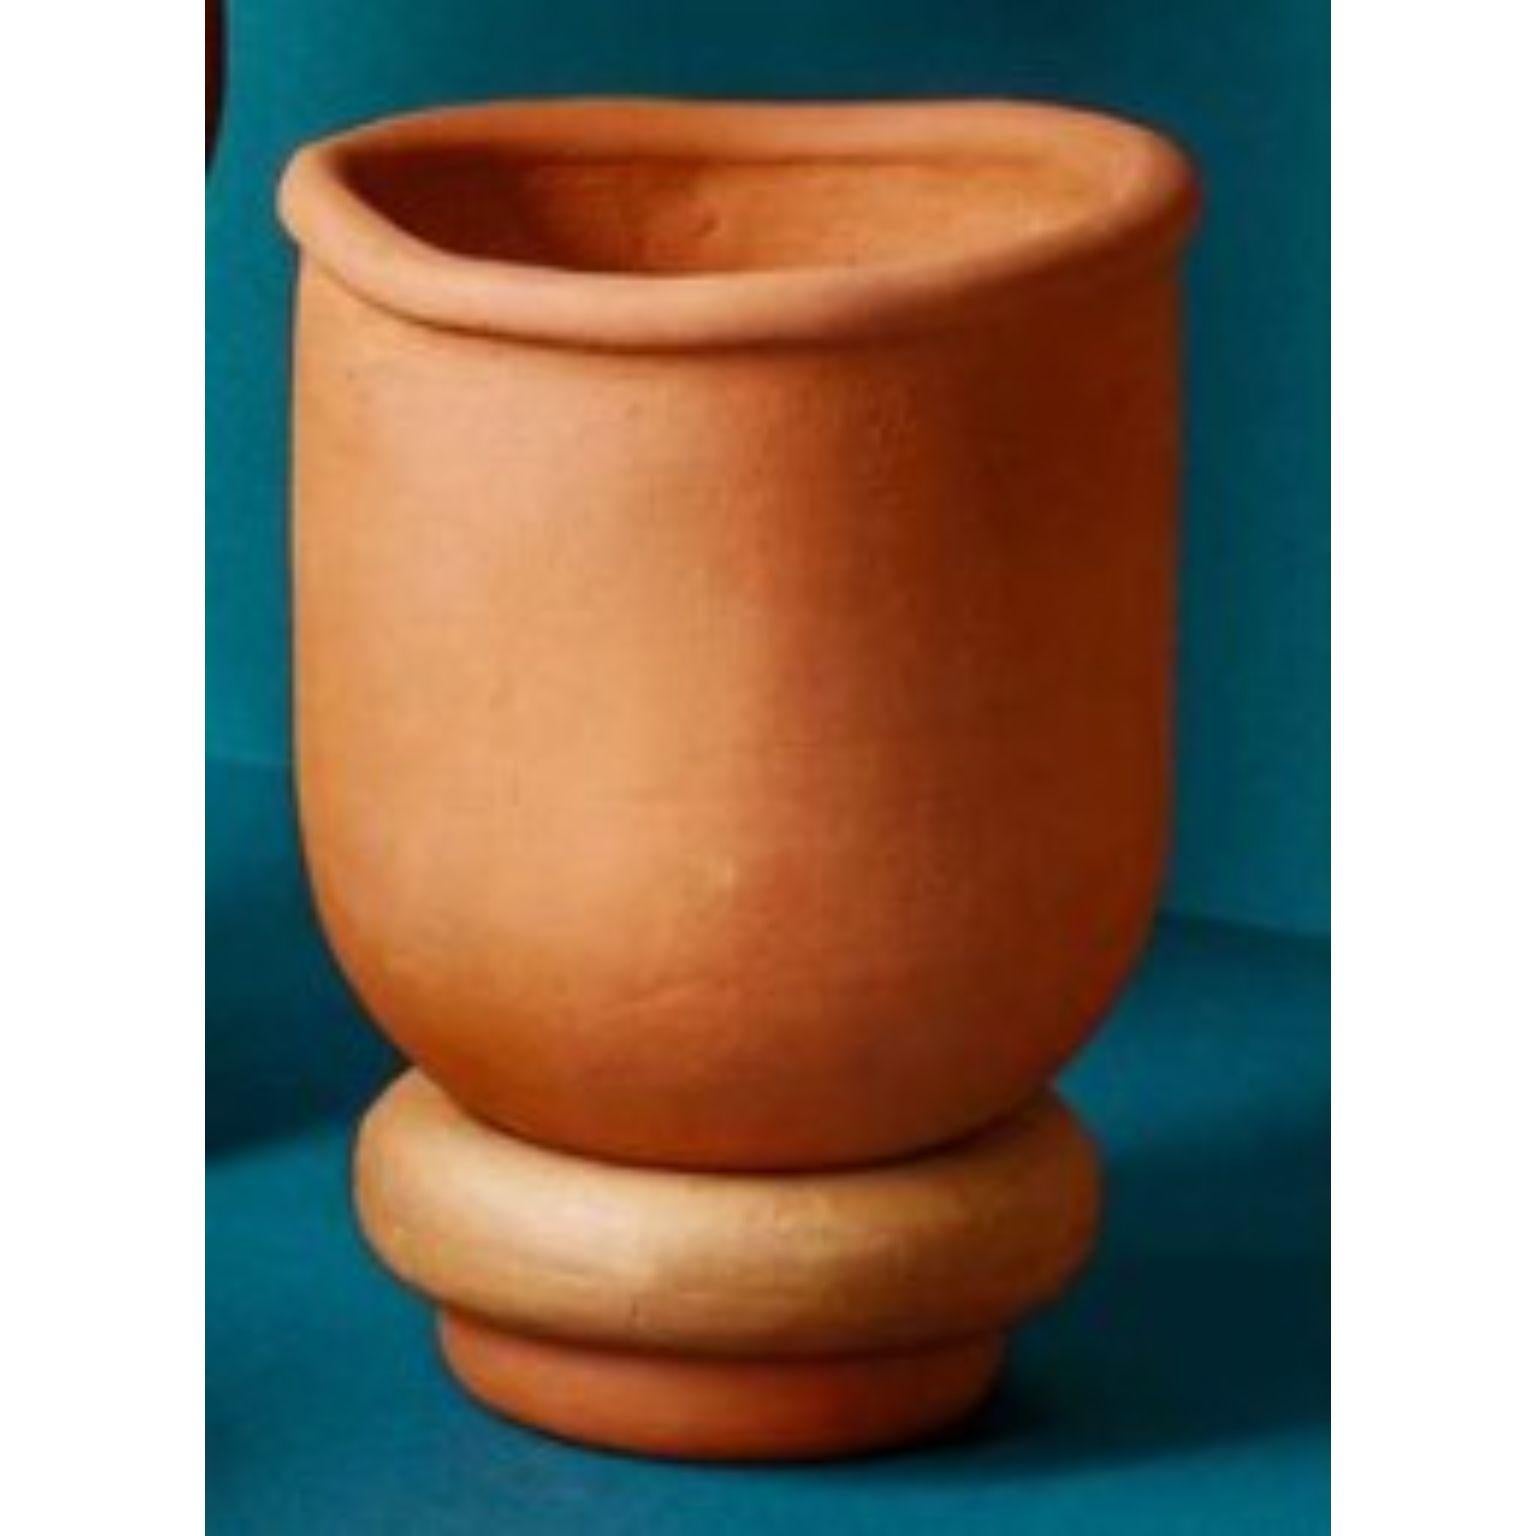 Vase Mix & Match Medium von Tero Kuitunen
MATERIAL: Handgefertigte Terrakotta.
Abmessungen: T22 x H25 cm
Ebenfalls erhältlich: Zwei verschiedene Größen, die auf verschiedene Weise zusammengestellt werden können.

Handgefertigte